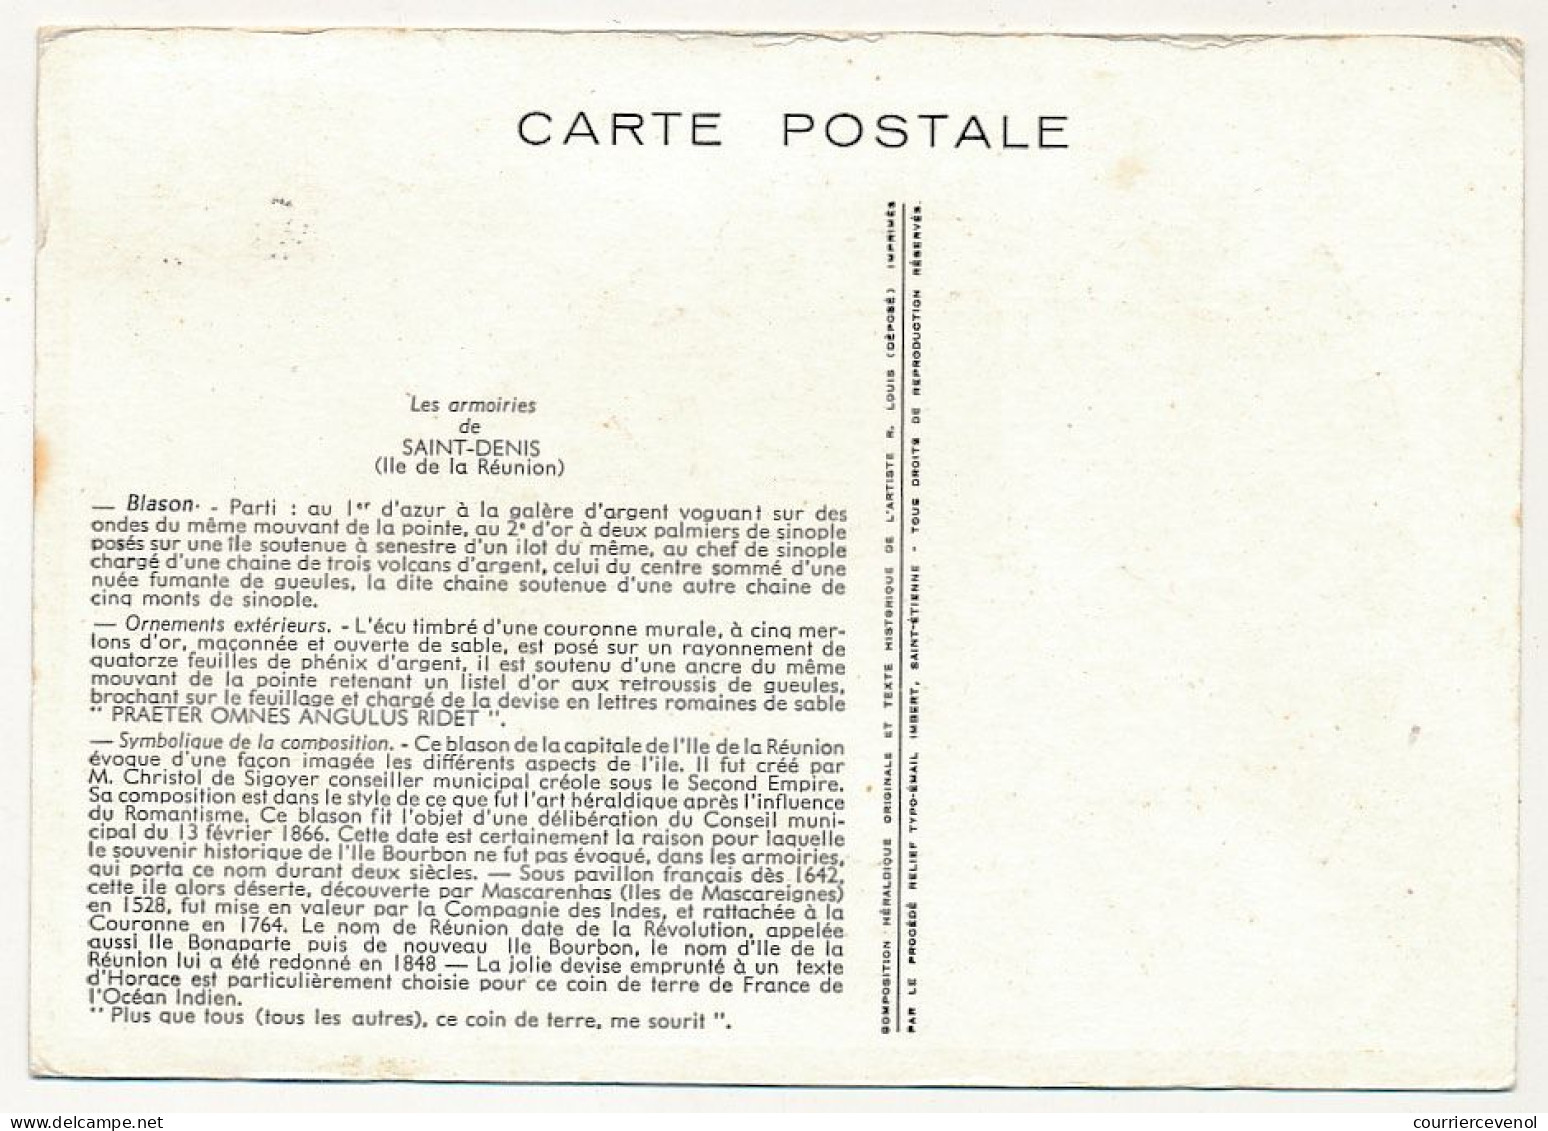 REUNION - Carte Maximum - 6F Blason De St Denis - Premier Jour - St Denis (Réunion) 16/5/1964 - Covers & Documents